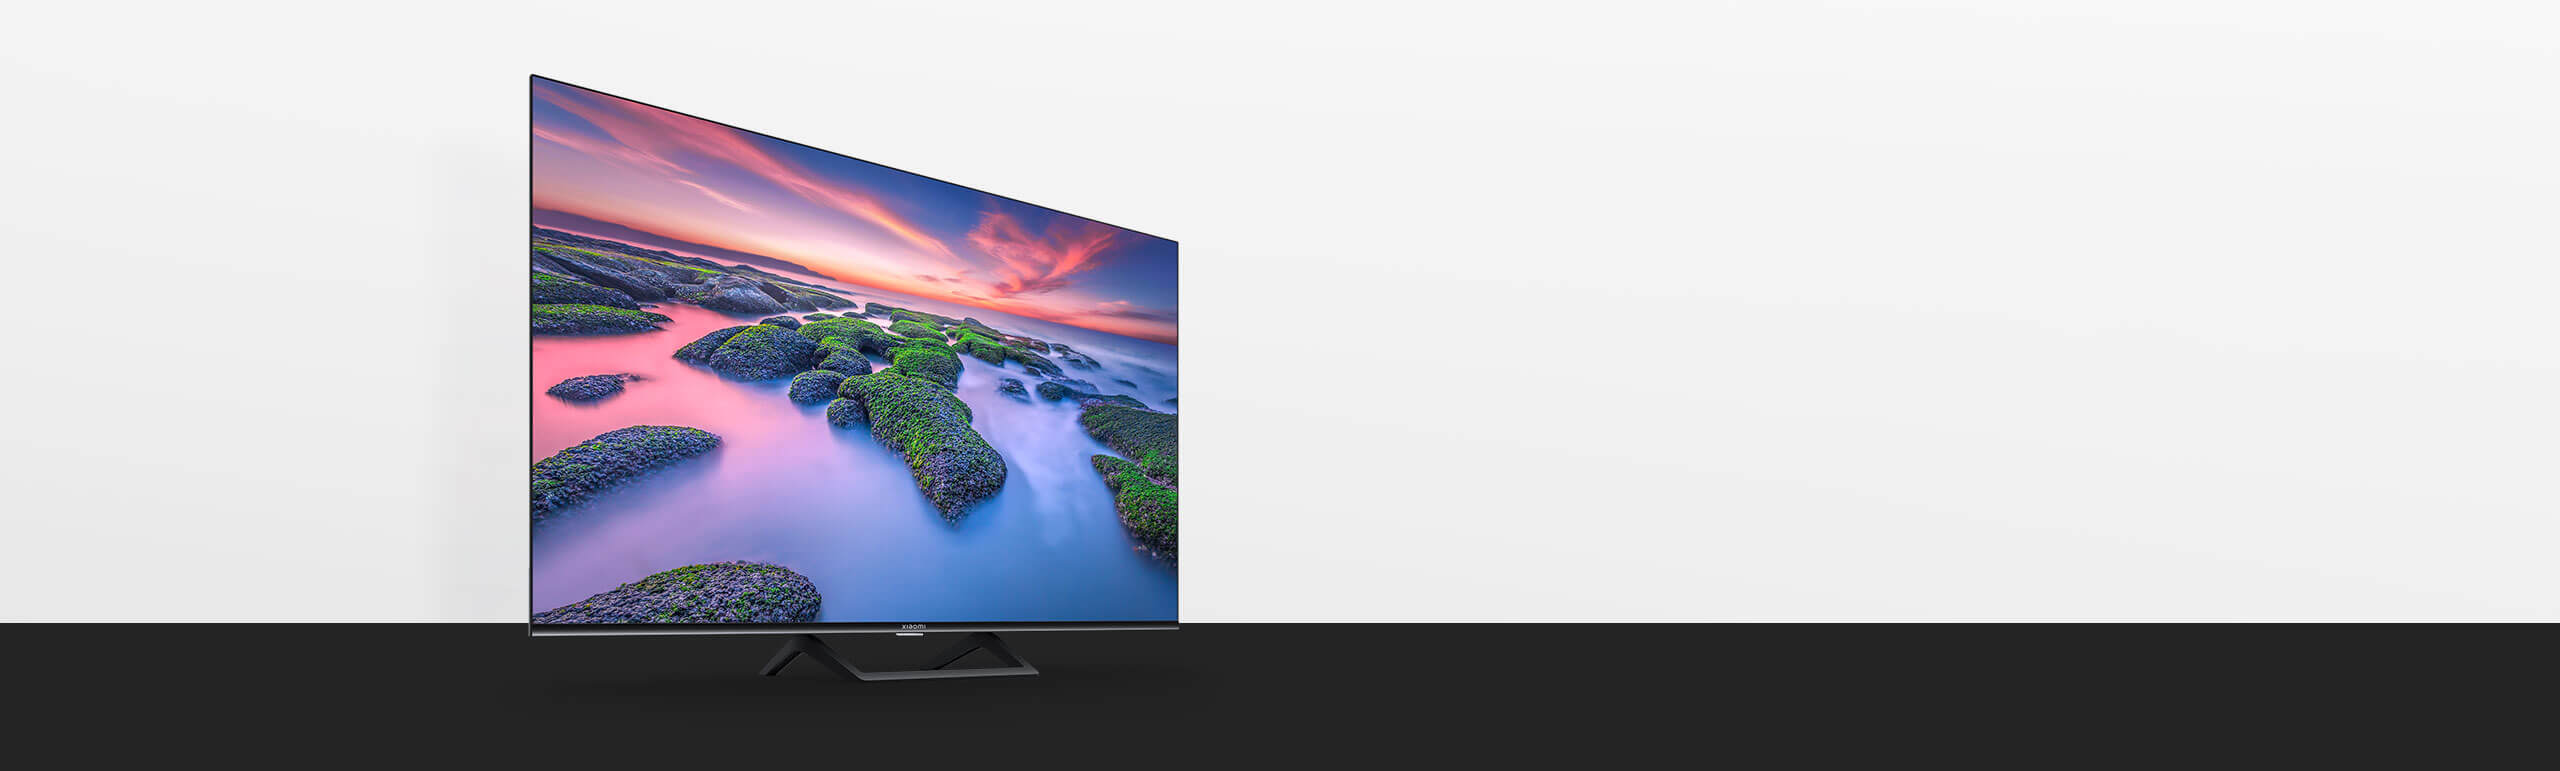 Телевизоры xiaomi купить a2 32. Xiaomi a2 телевизор. Xiaomi a2 43 телевизор. 43" Телевизор Xiaomi mi TV a2. 55" Телевизор Xiaomi mi TV a2.